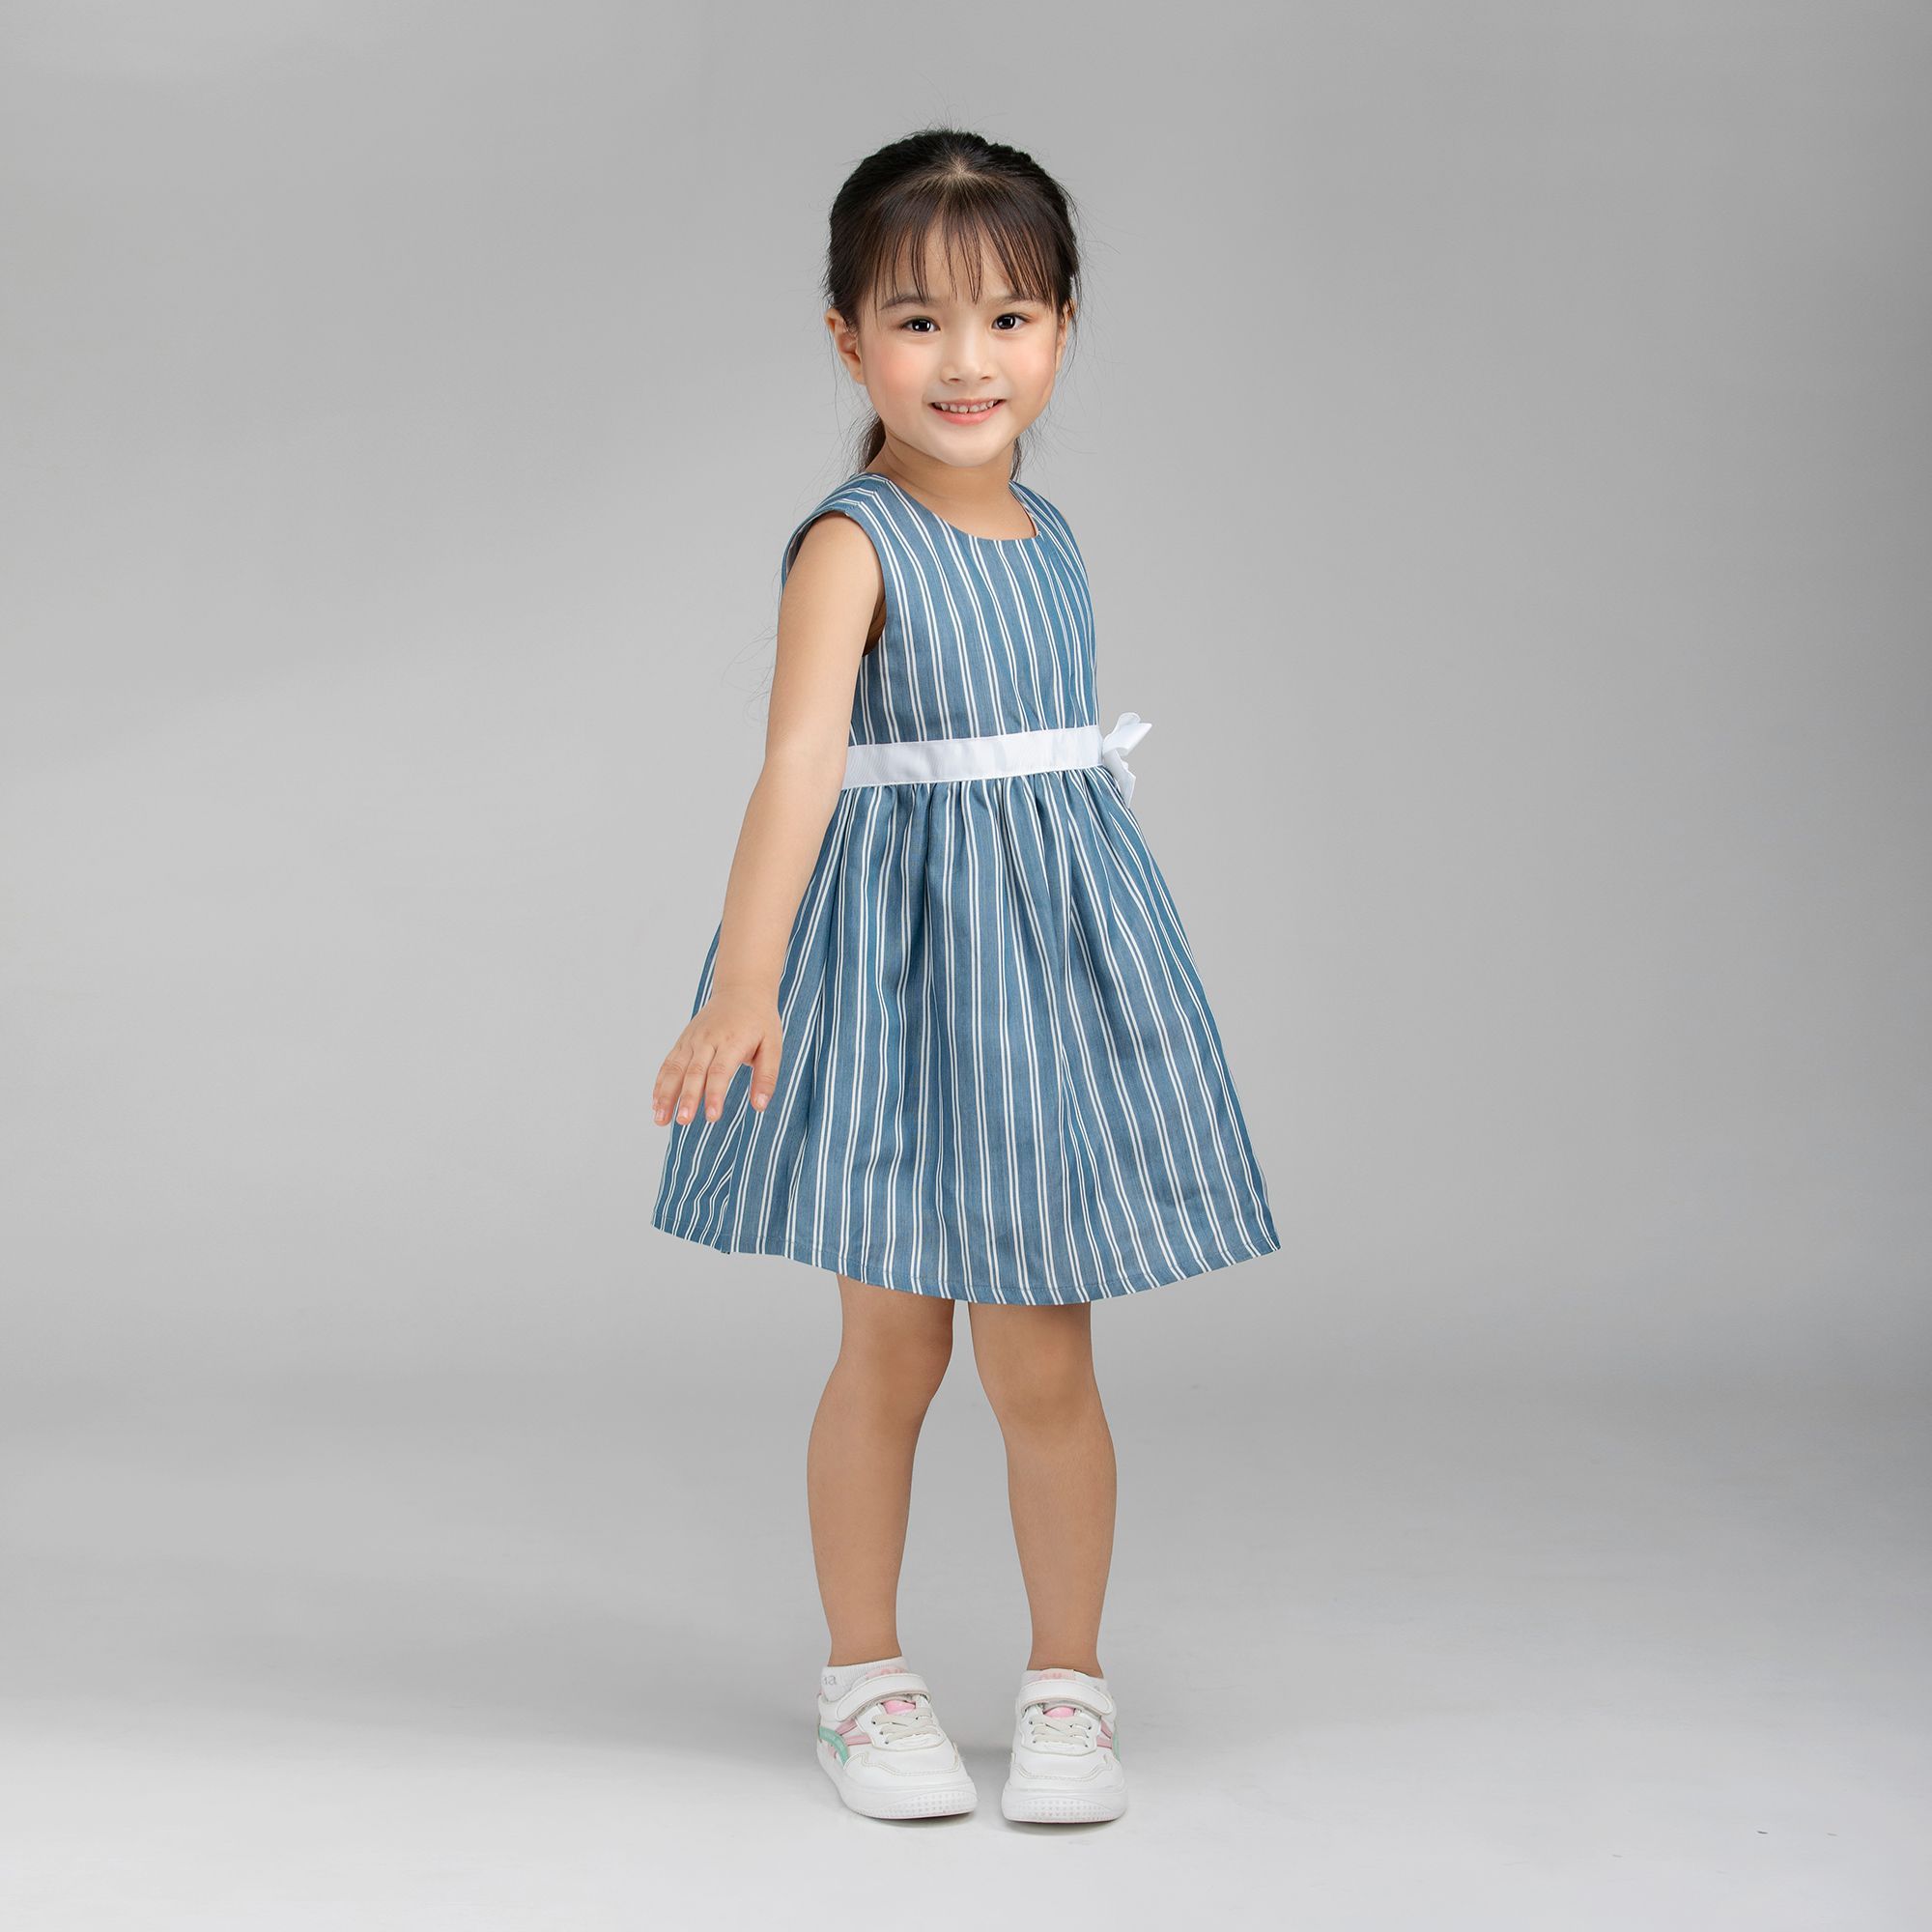 Mua Váy cho bé gái 2-6 tuổi cực xinh ạ - Mẫu 3,2 tuổi 10-12kg tại Quần áo trẻ  em Mộc Nhĩ baby | Tiki